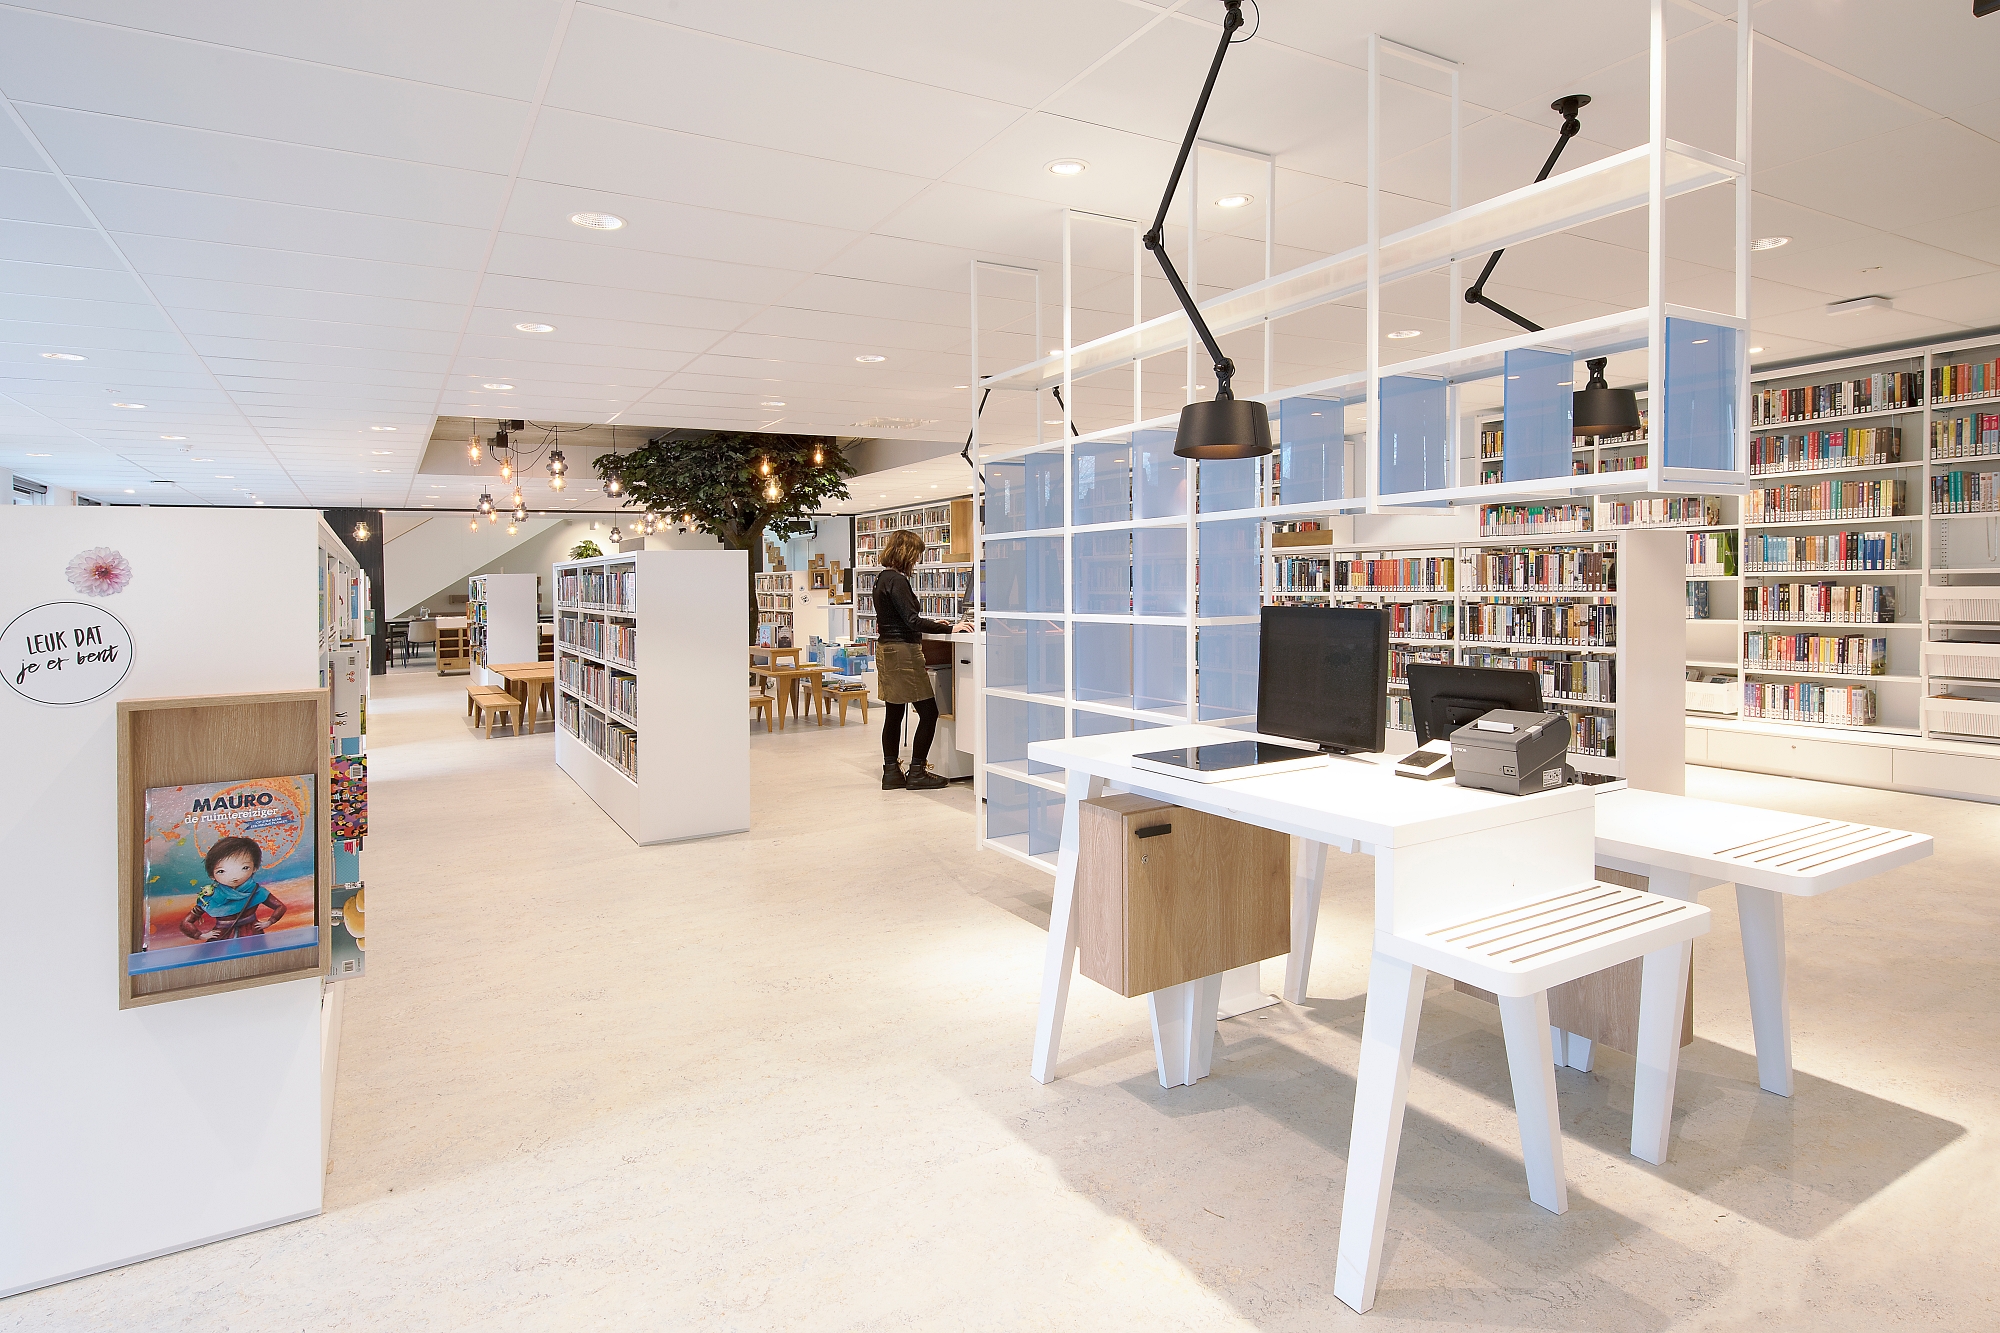 Bibliotheek Bouwlust Den Haag: een oase in de stad